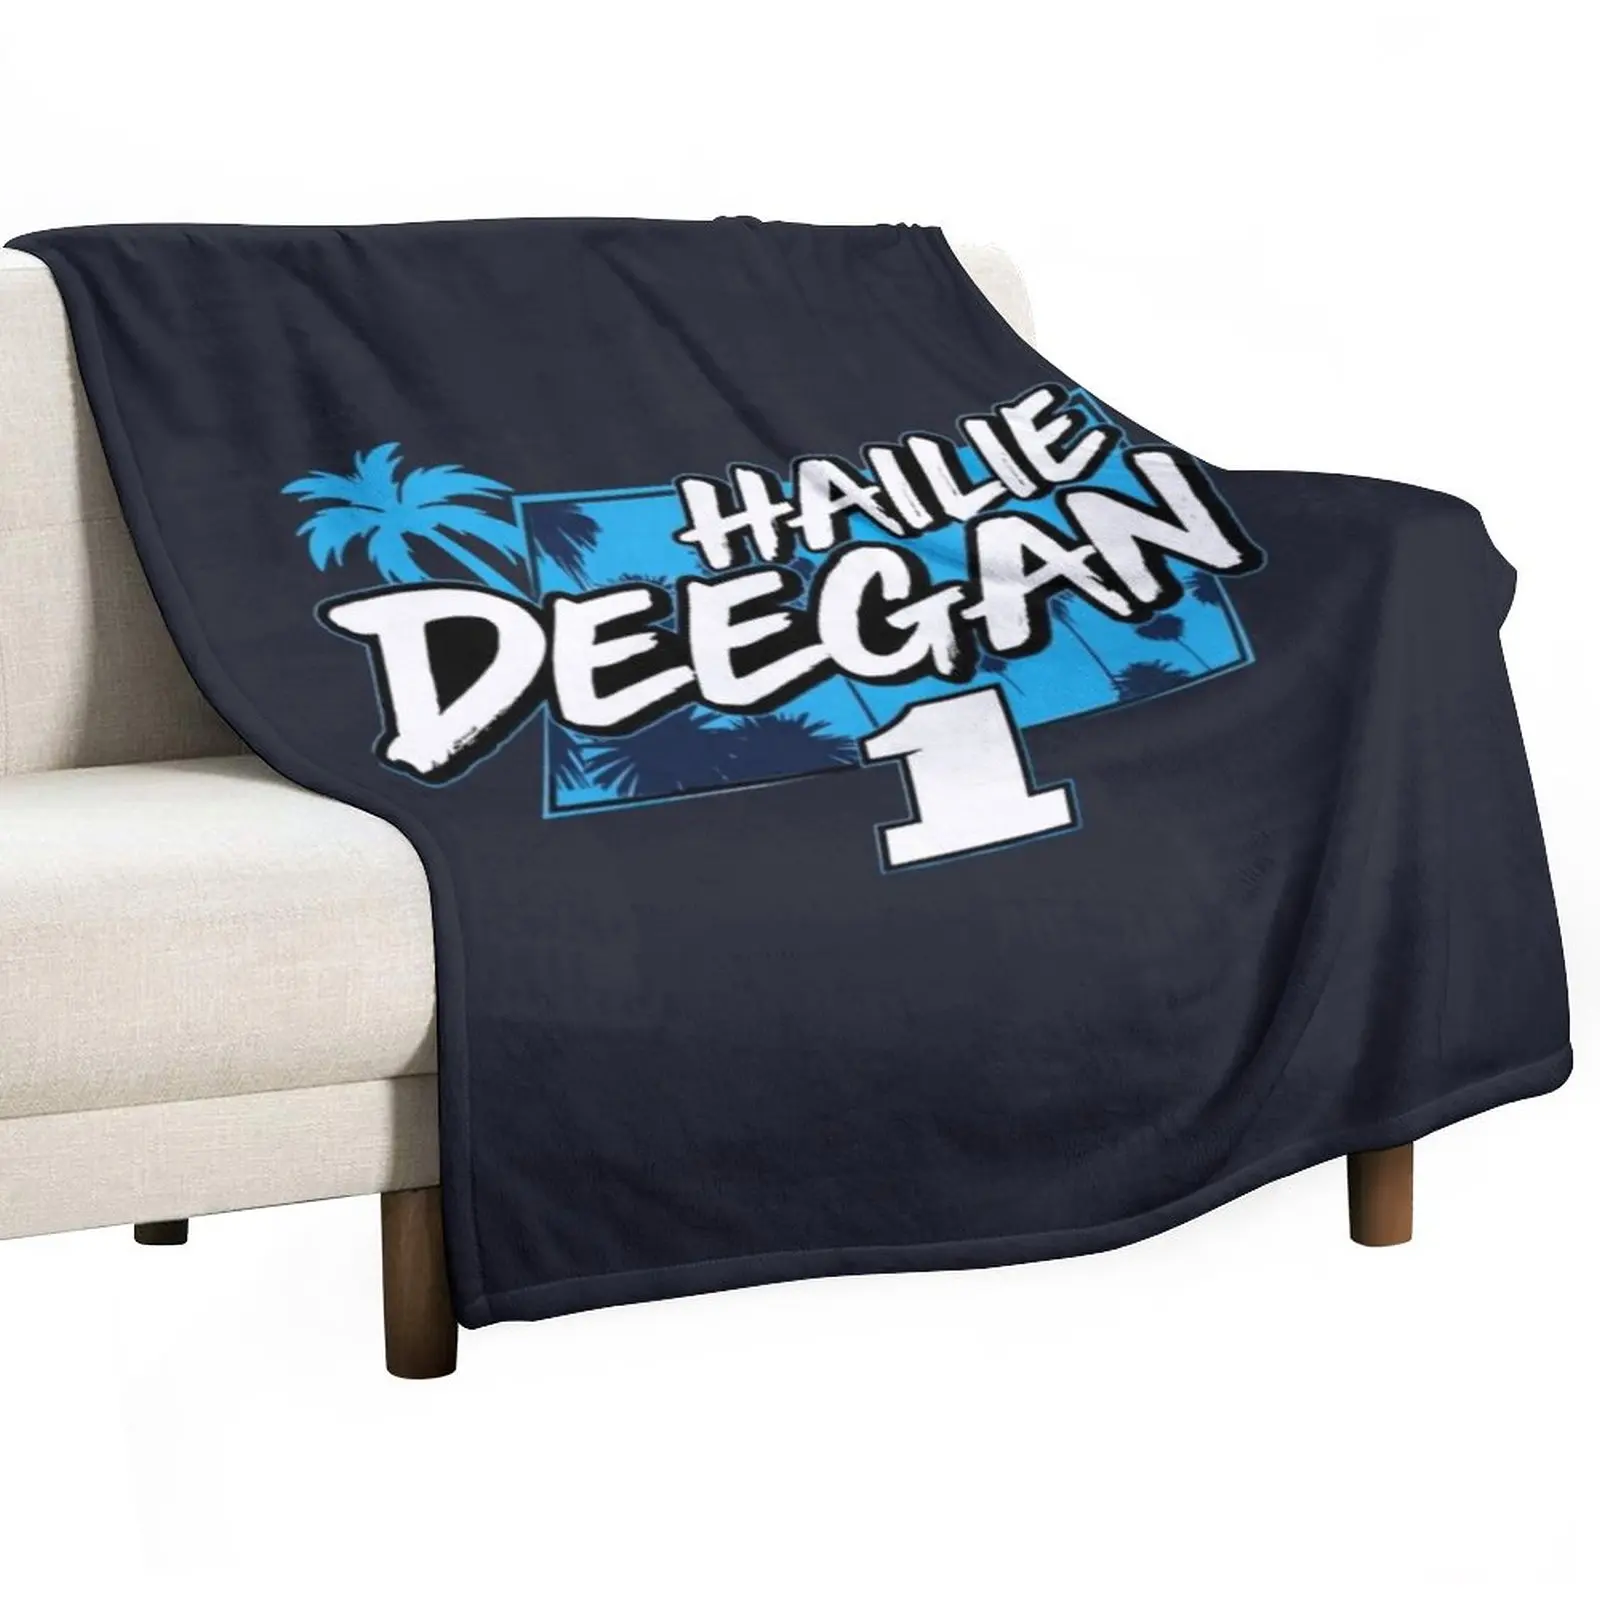 

Hailie Deegan Merch отходное одеяло, индивидуальное одеяло, модное одеяло